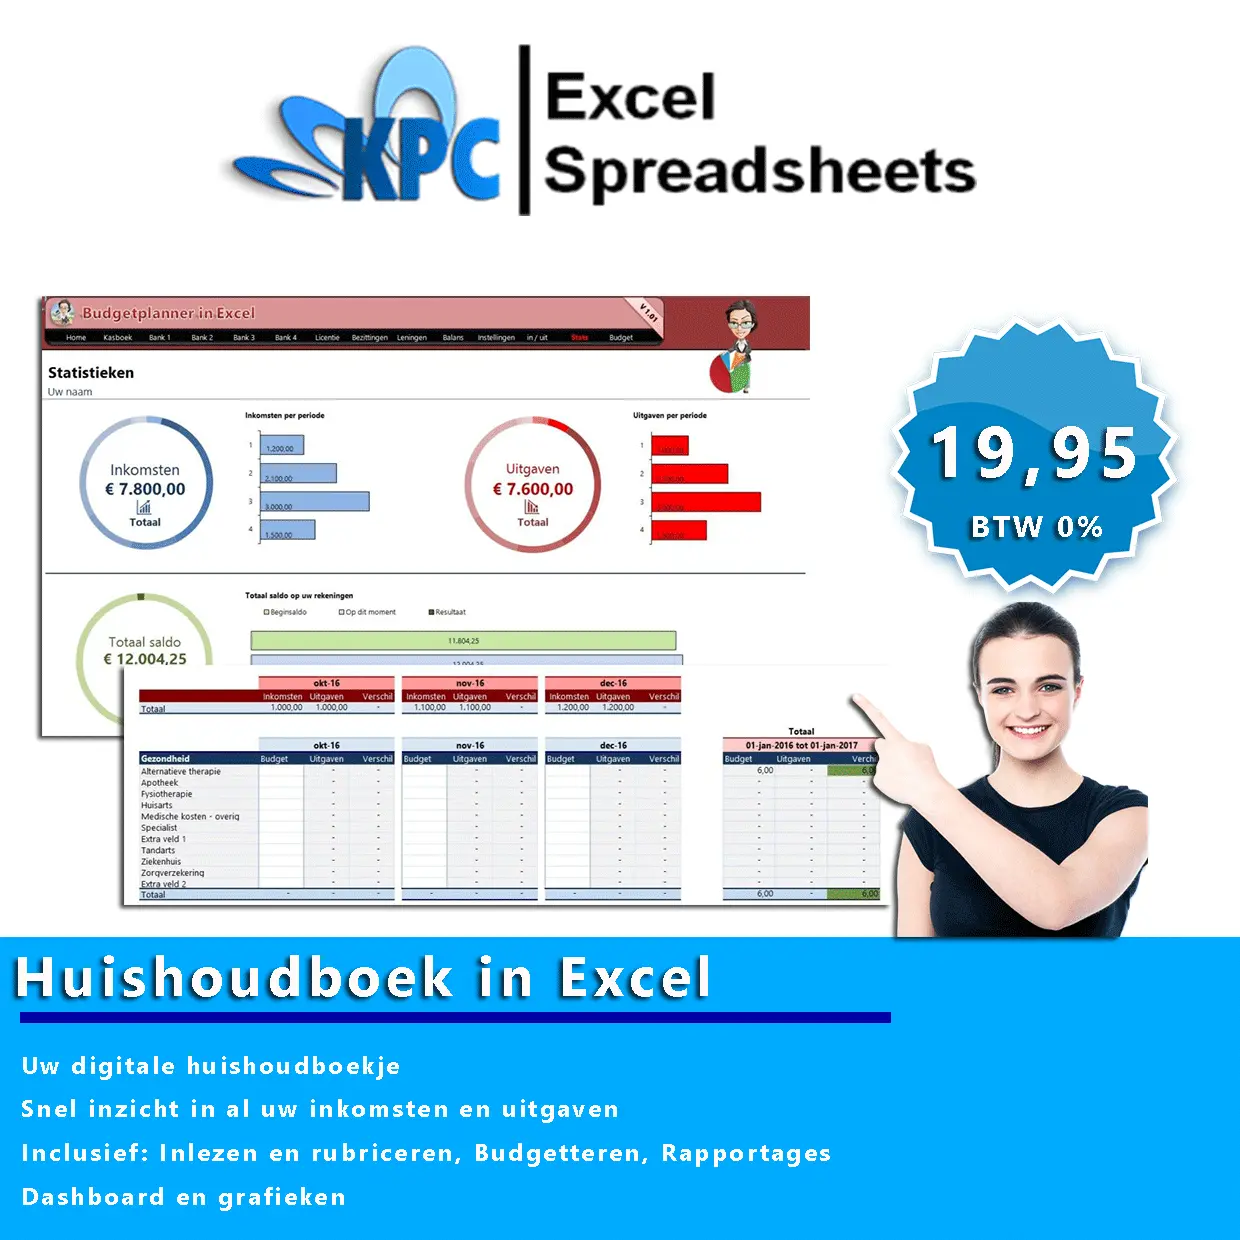 Huishoudboek in Excel